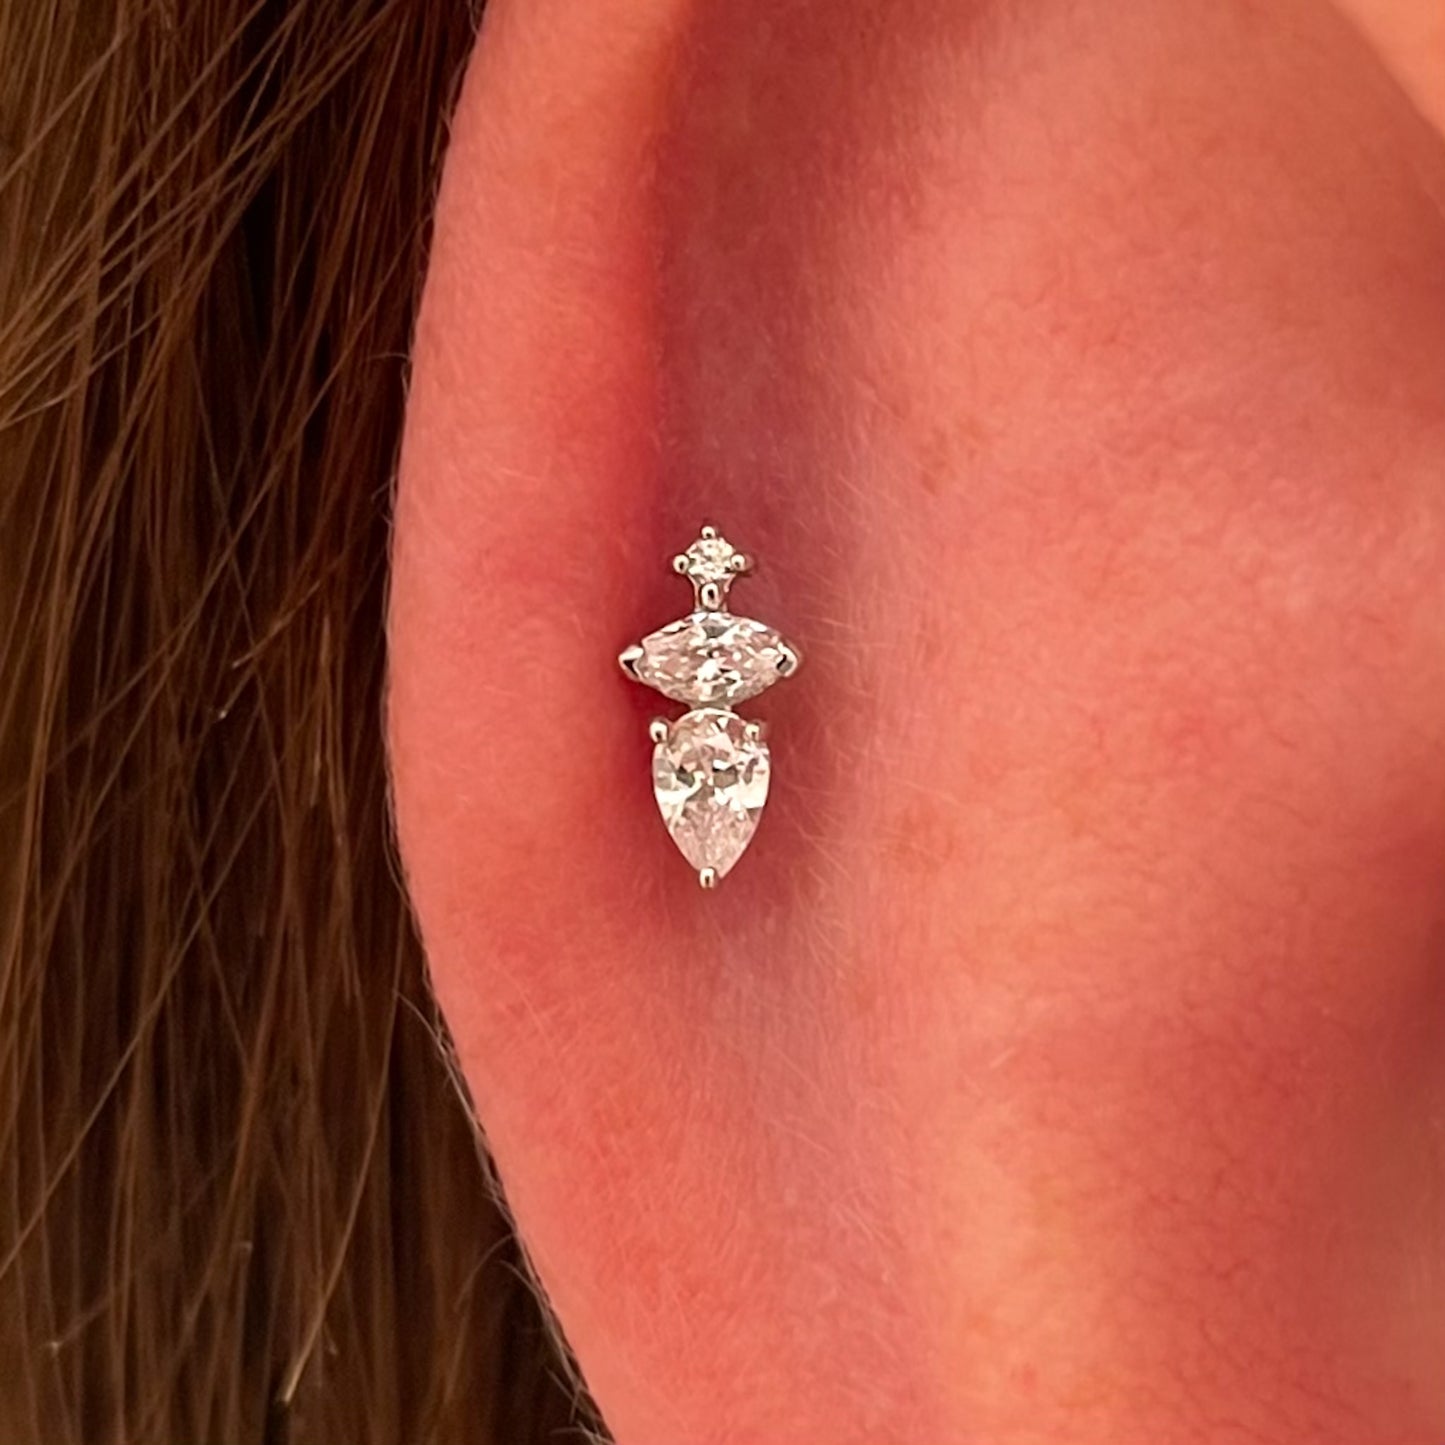 9k solid white gold Elsa flat back labret stud earring 6mm